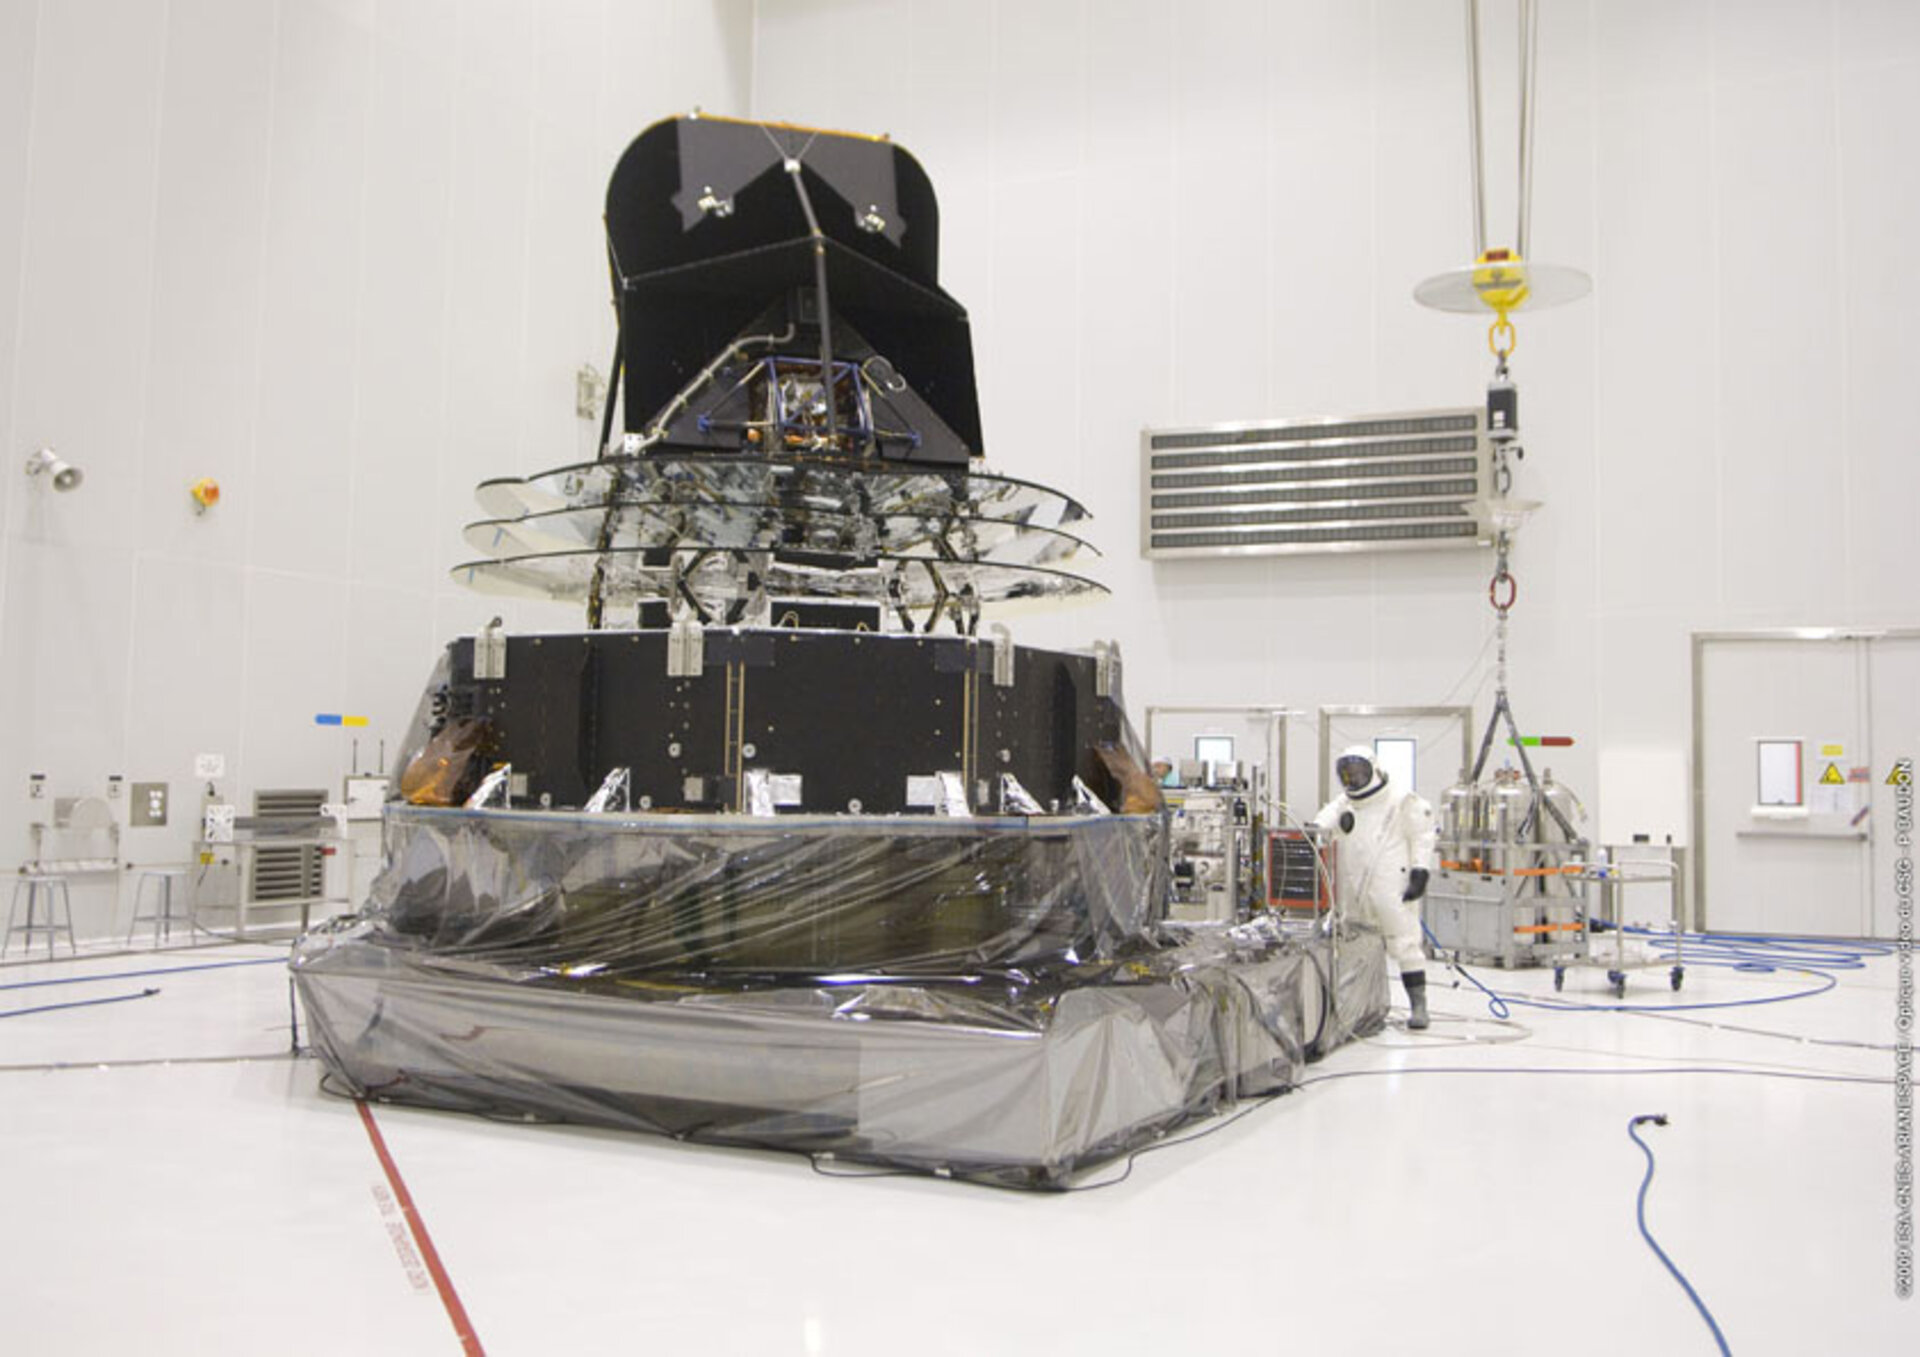 Planck on lähes valmiina liitettäväksi kantorakettiin